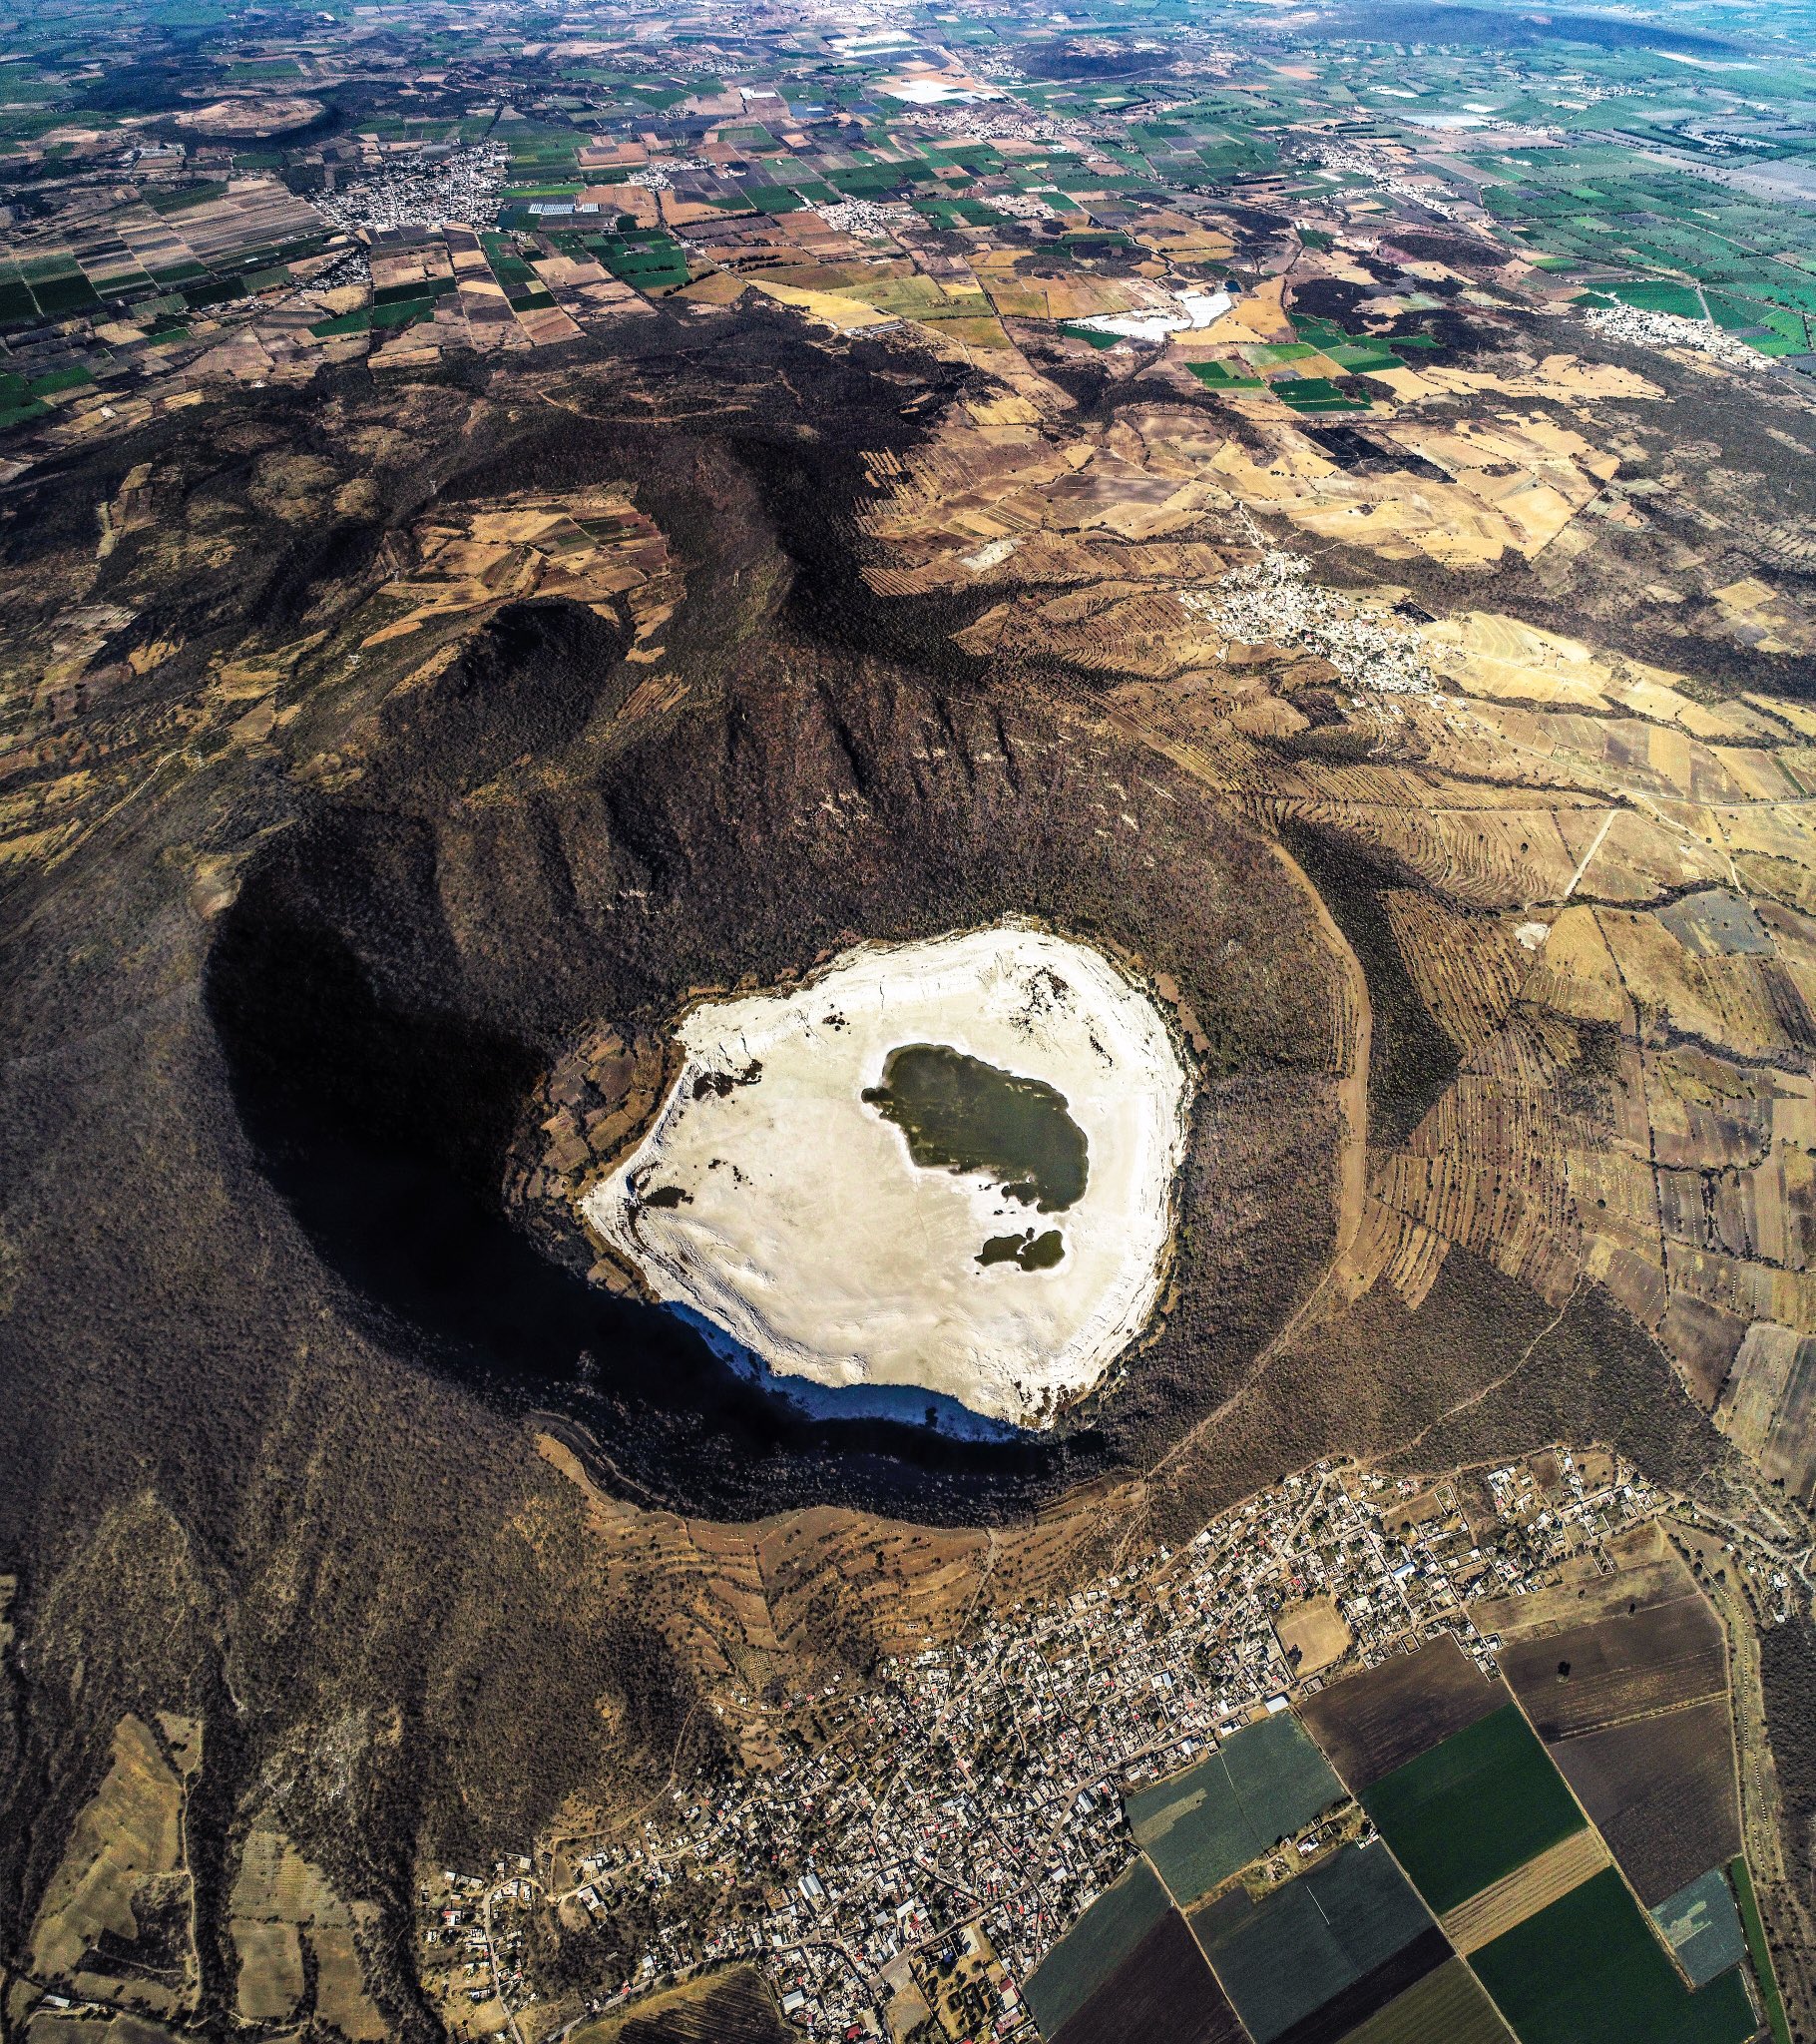 crateres volcanicos inactivos en guanajuato mexico